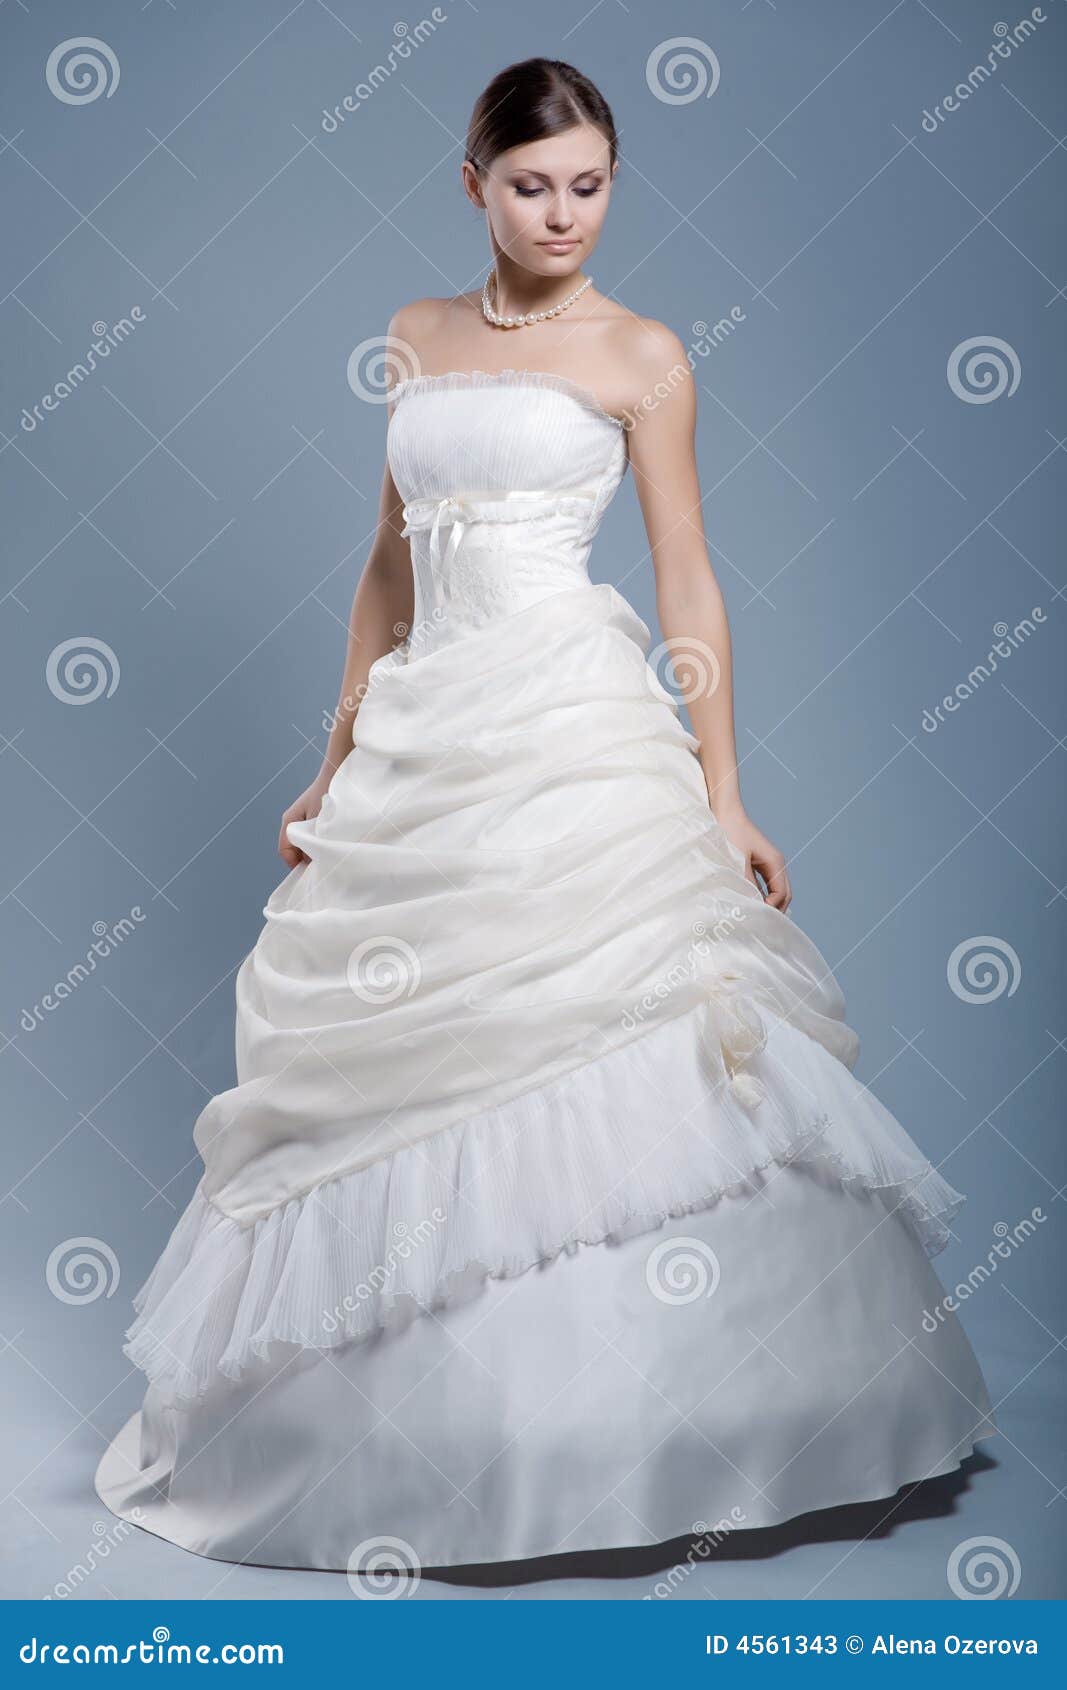 Wedding Dress on Fashion Model Stock Image - Image of female, attitude:  4561343